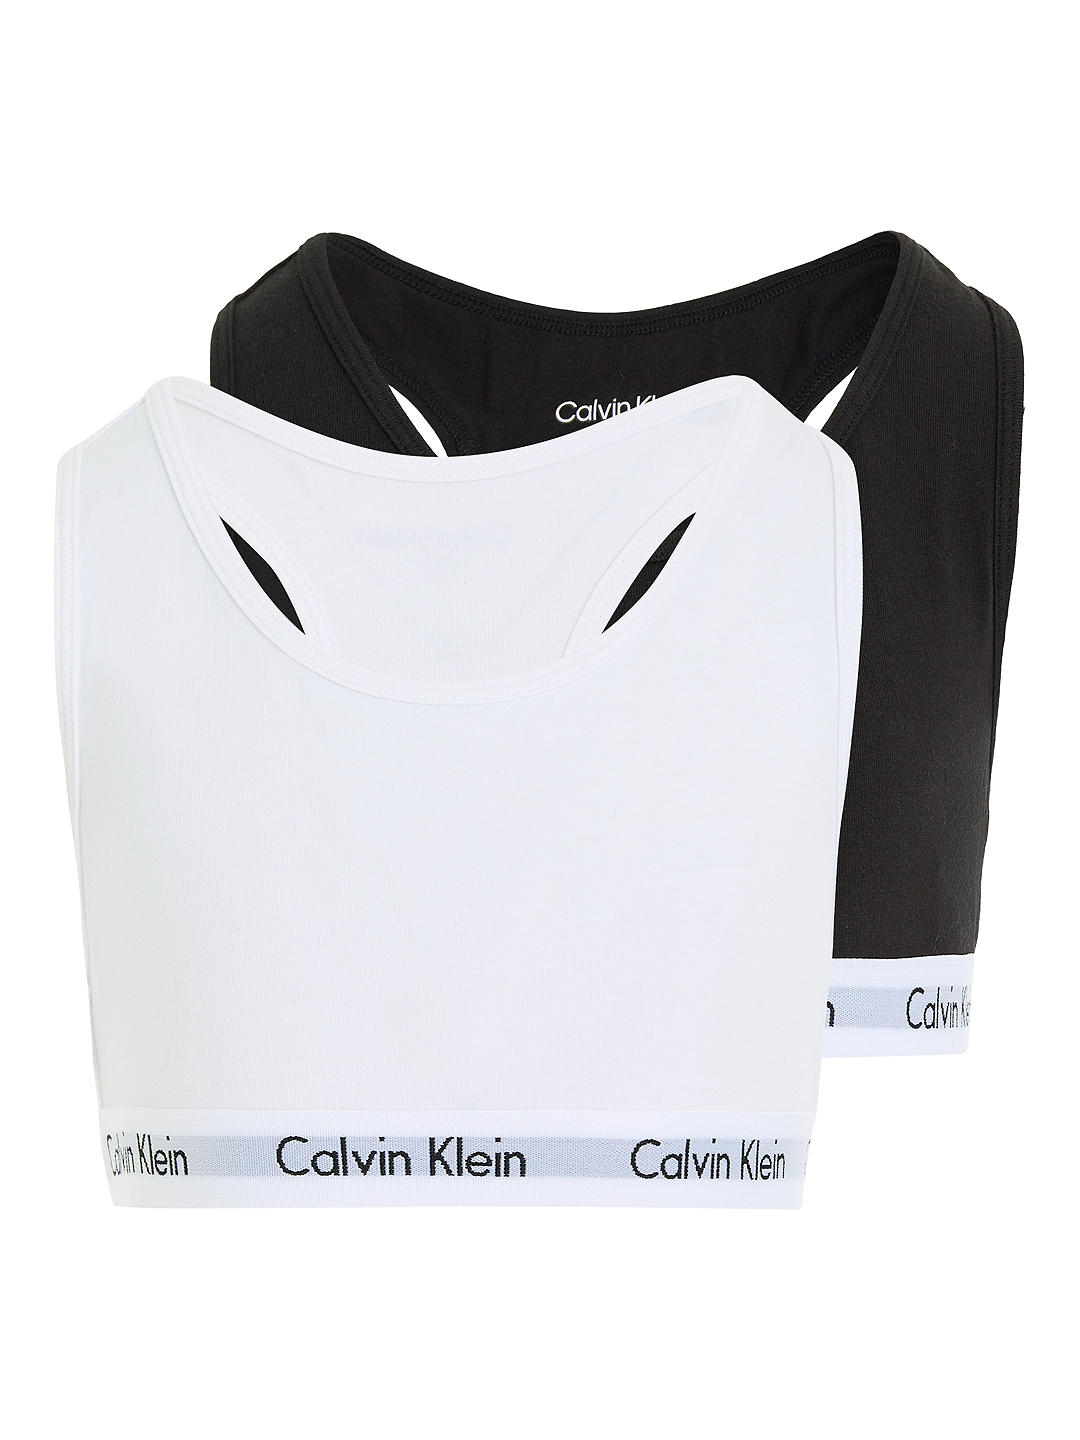 Calvin Klein Kids' Bralette, Pack of 2, Black/White